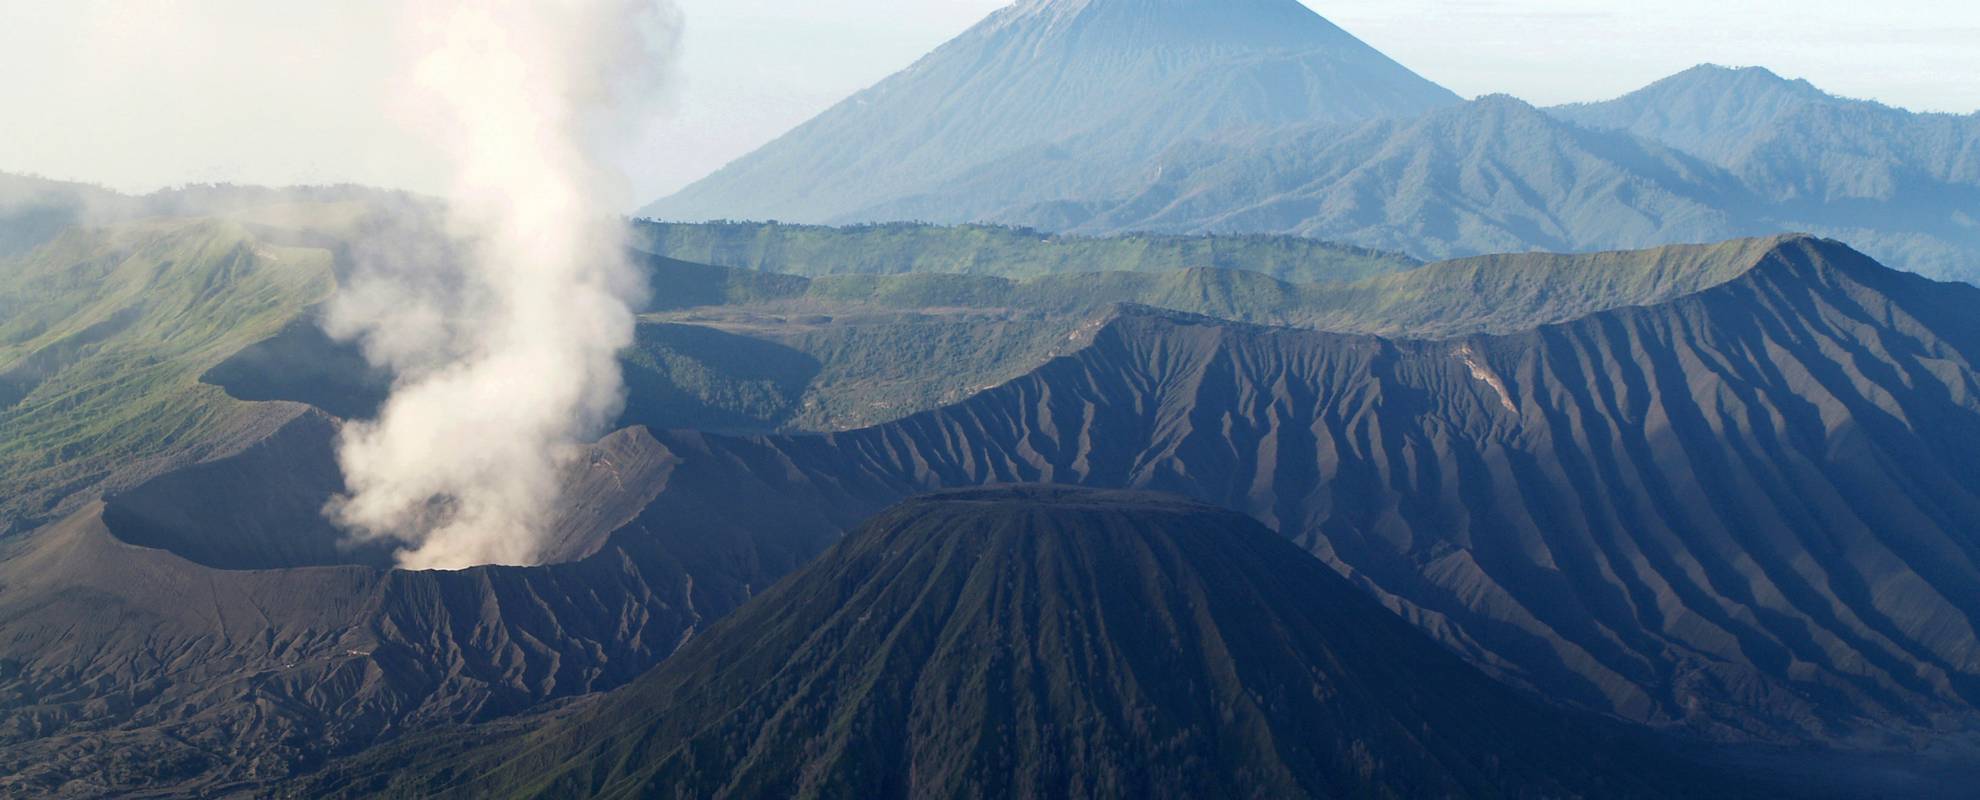 Du besöker flera mäktiga vulkaner under resan